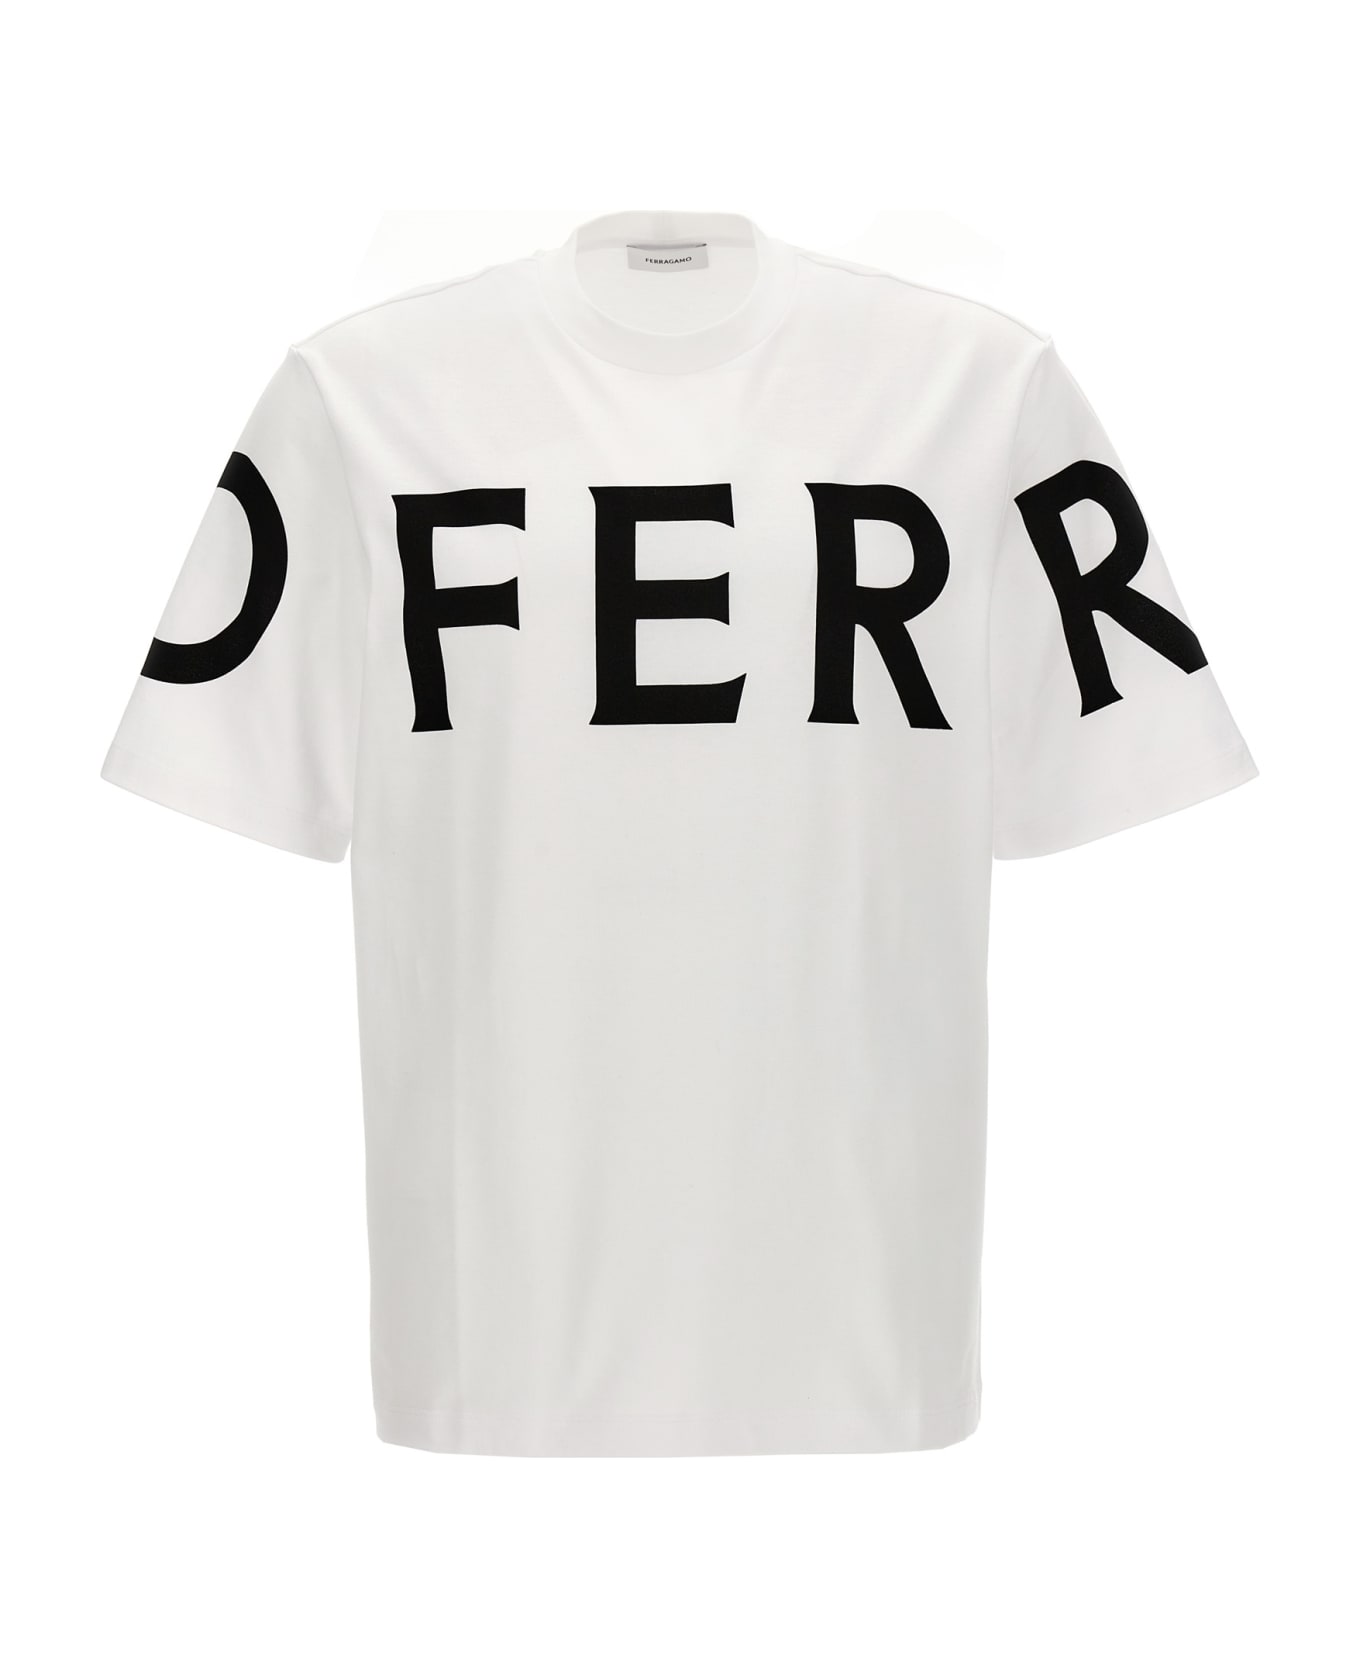 Ferragamo Logo Print T-shirt - White/Black シャツ